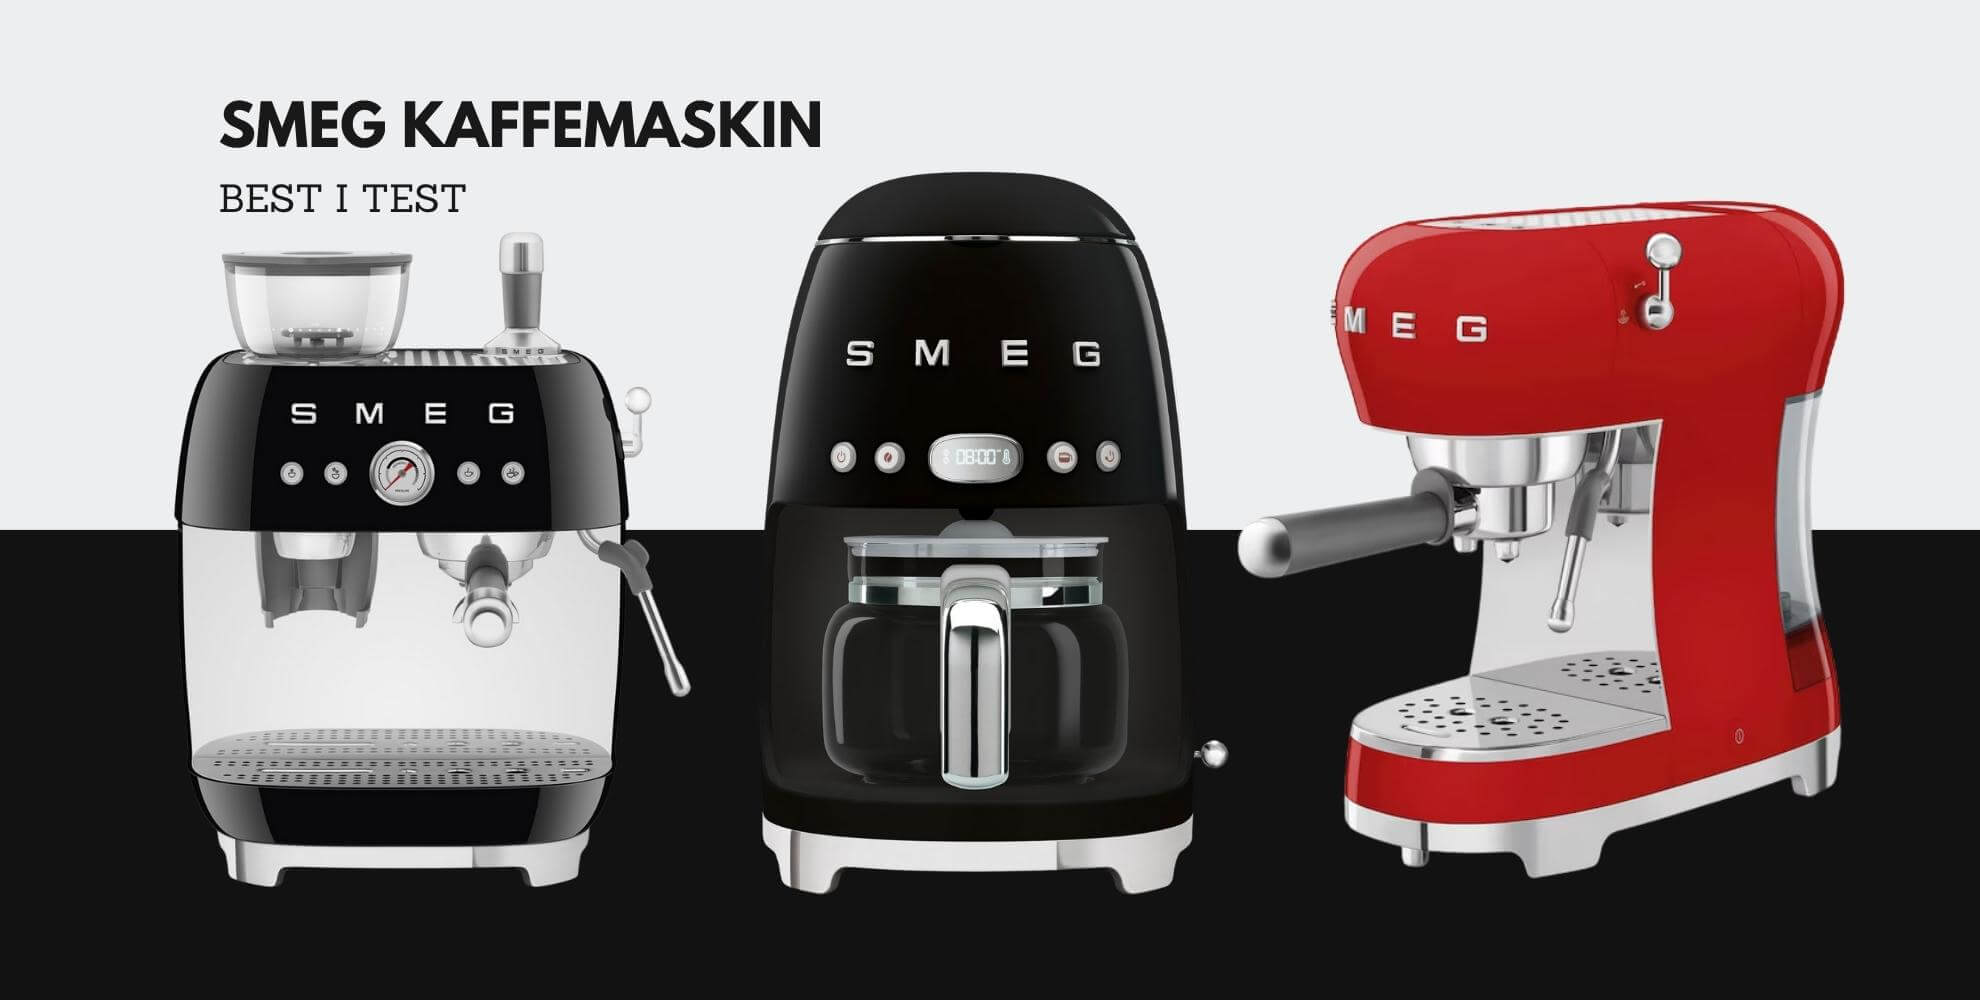 Bilde av tre knallgode kaffemaskiner fra merket Smeg, og tekst som sier: Smeg kaffemaskin, best i test